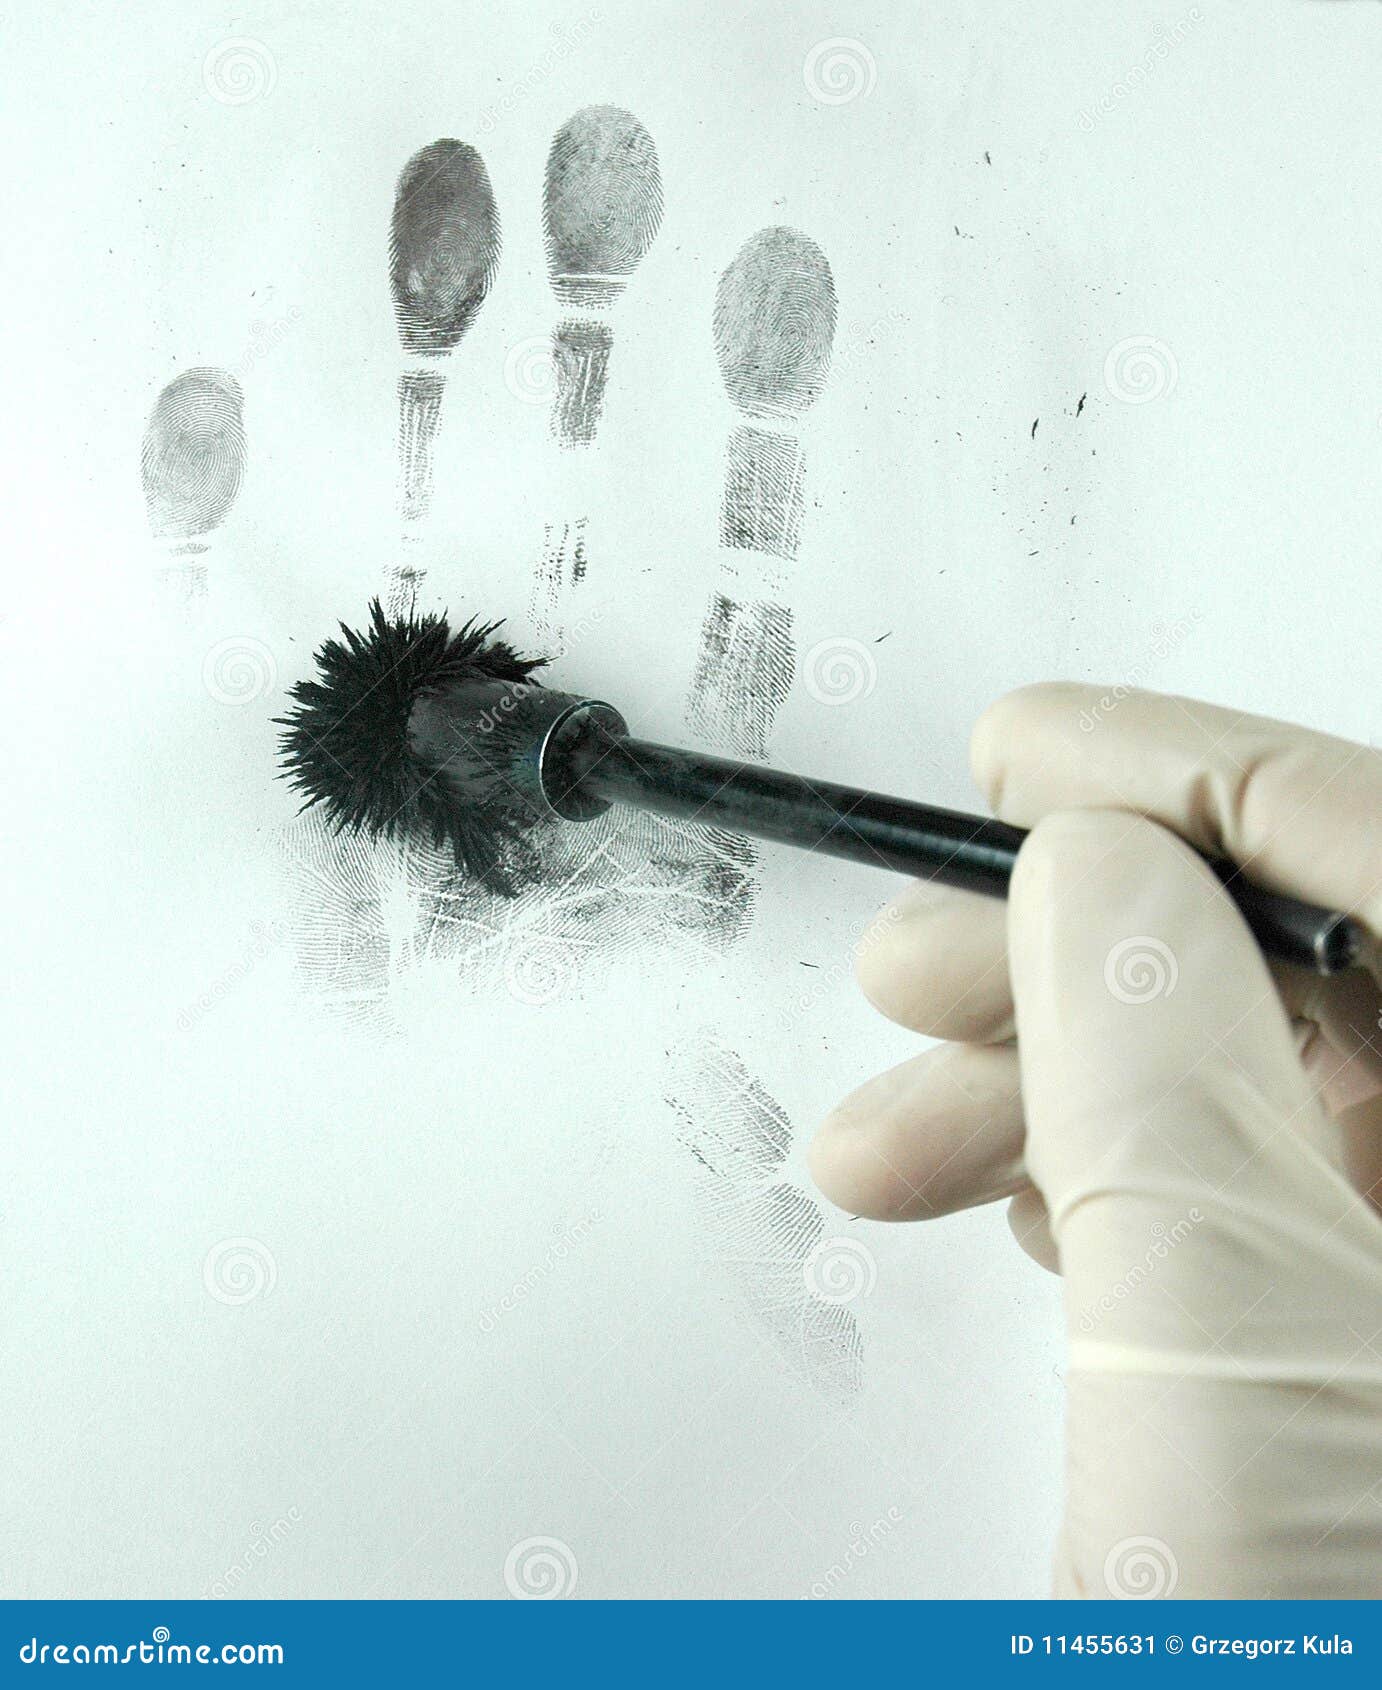 revealing the fingerprints